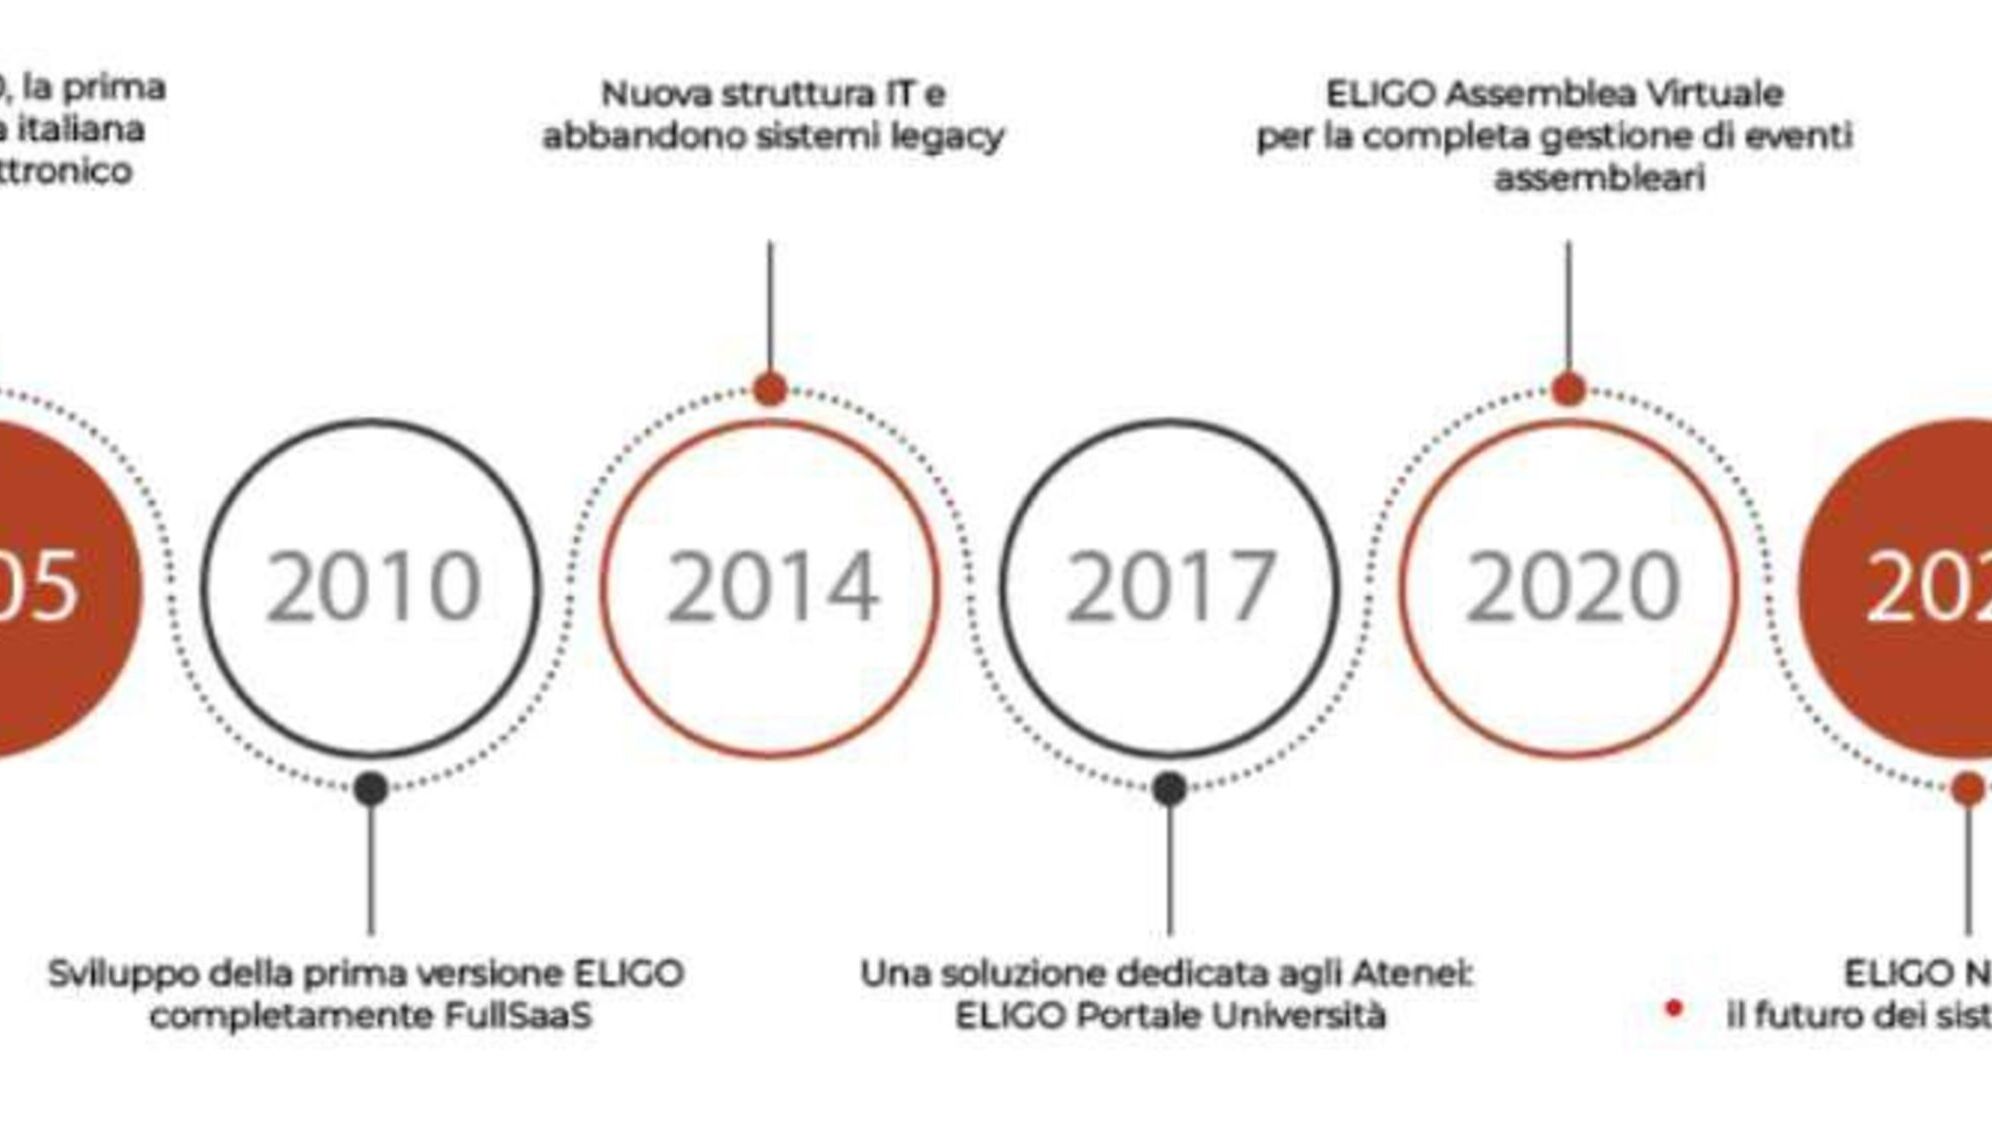 Eligo Next: en interessant infografik taget fra den officielle præsentationsbrochure for den nye elektroniske og online afstemningsplatform Eligo Next